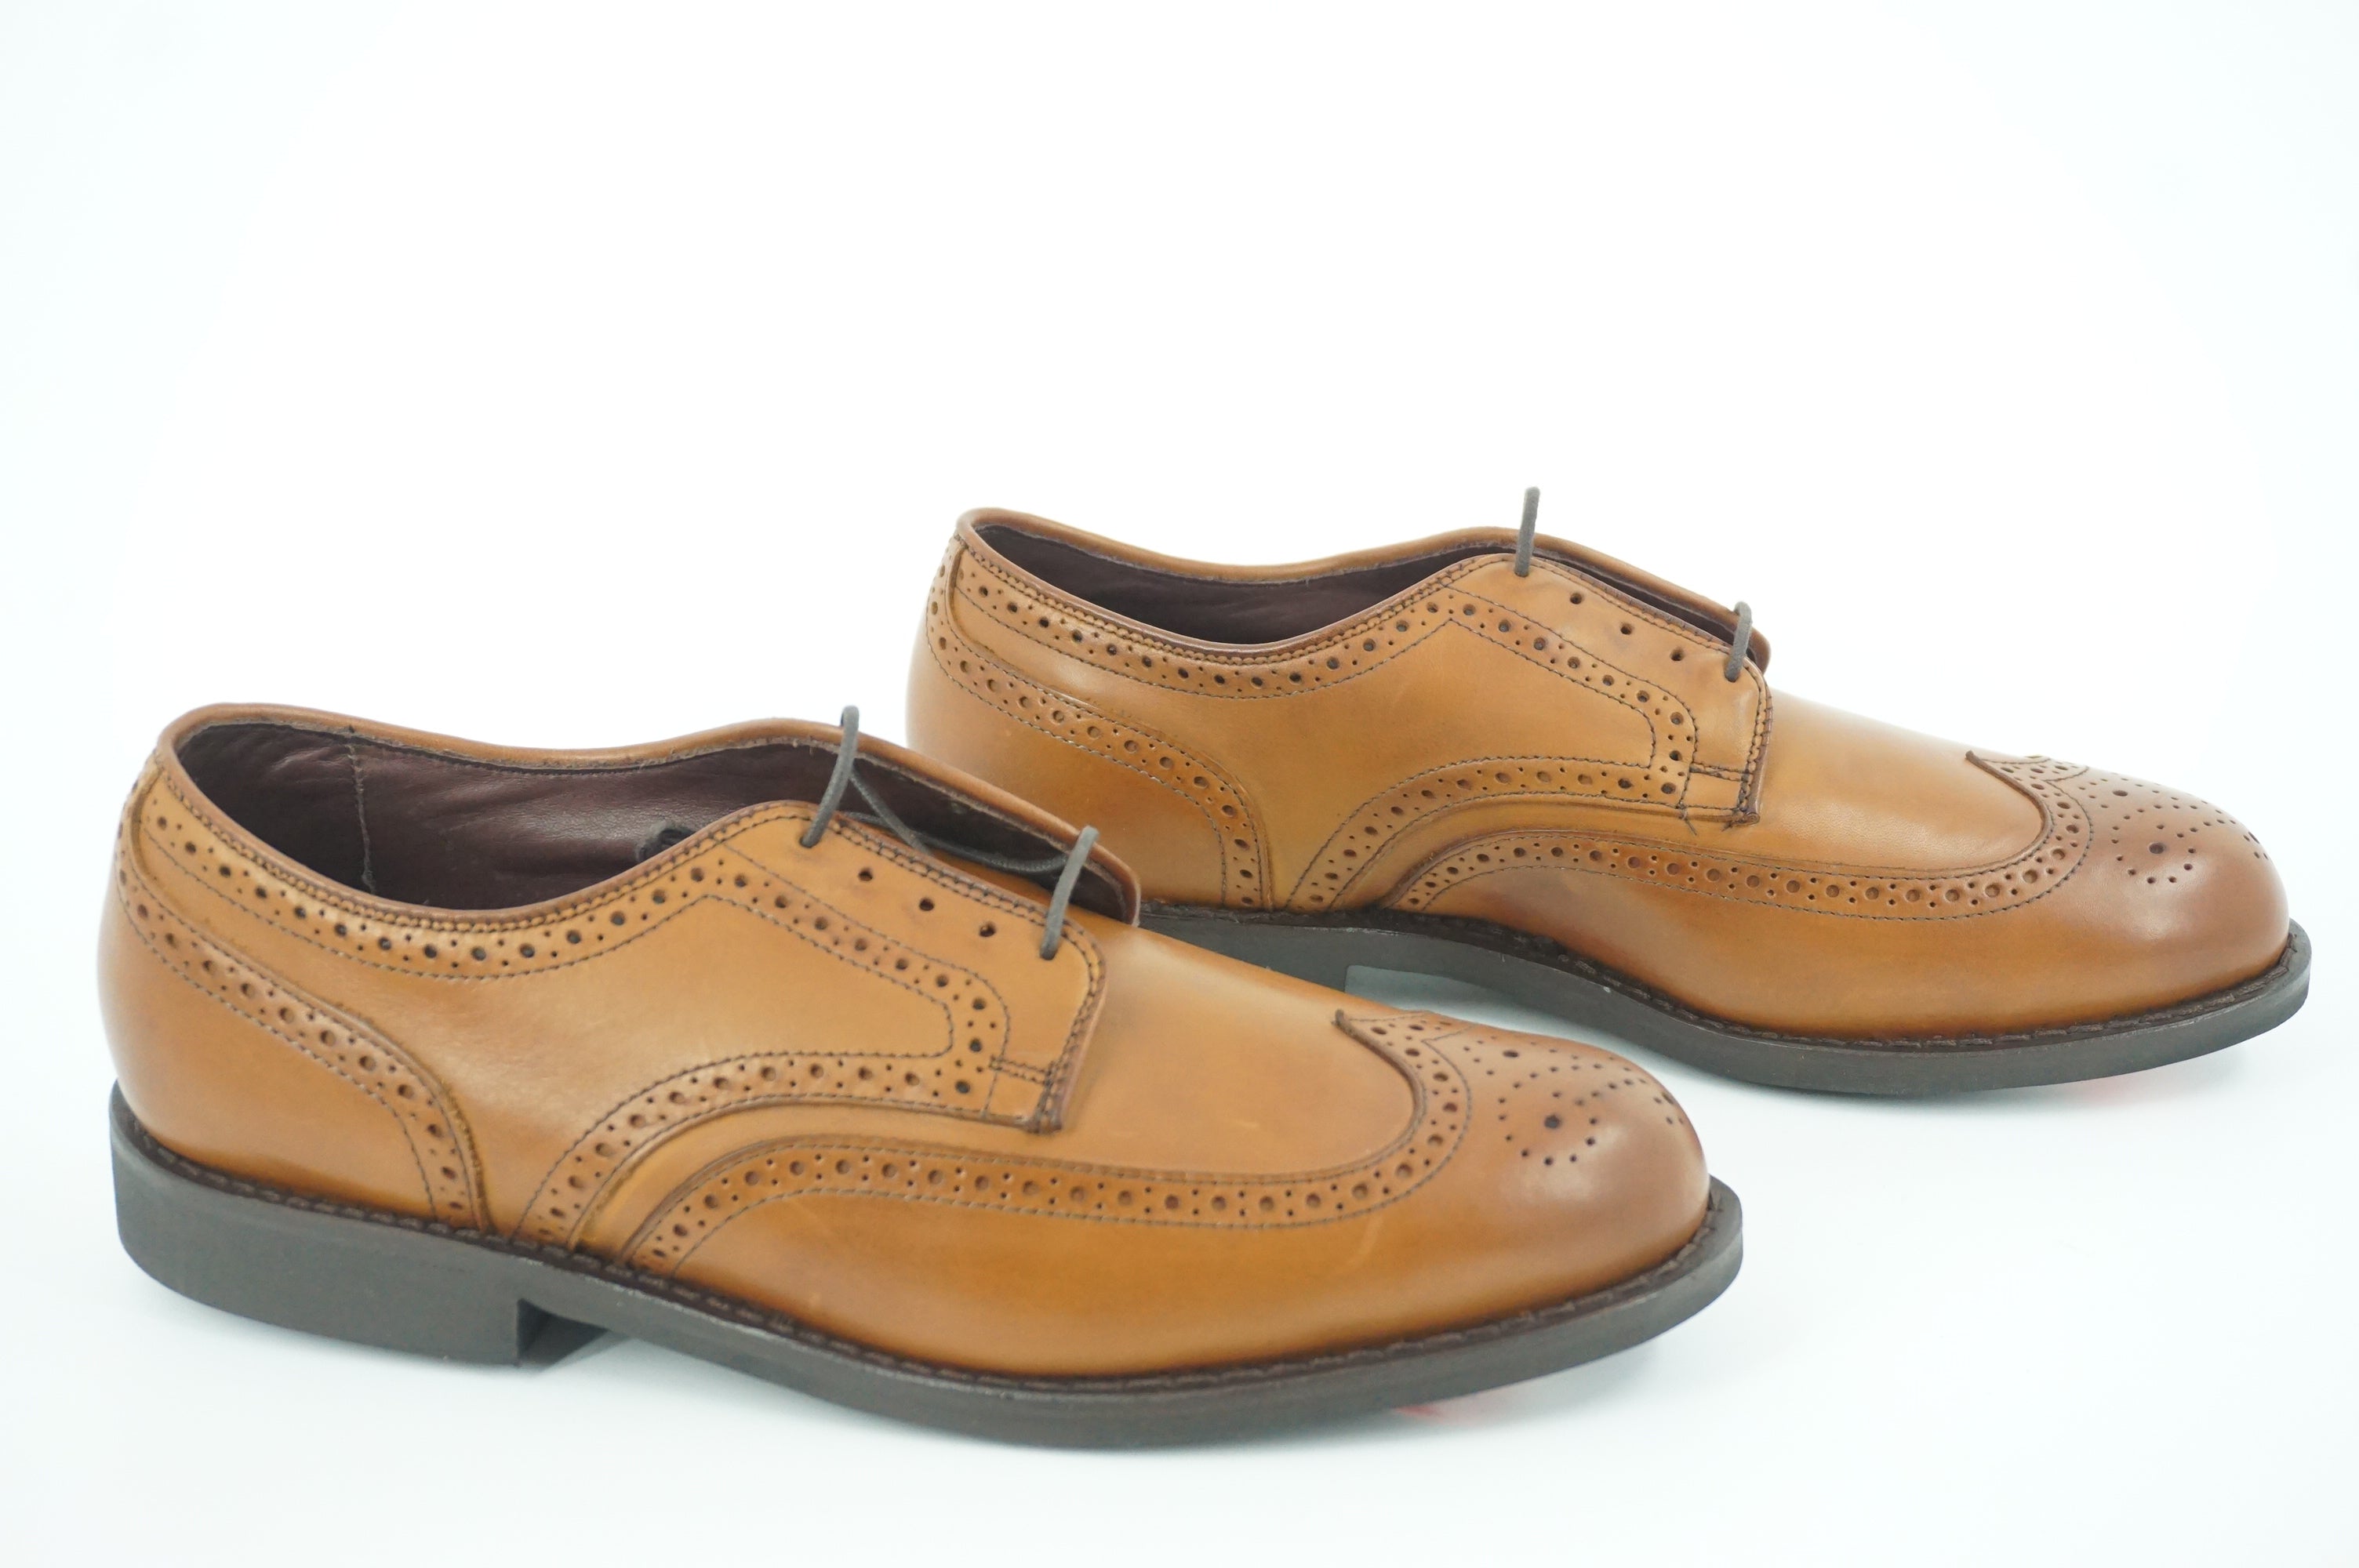 Allen Edmonds Nomad Dress Shoes Brown Leather Size 9.5 Mens Oxfords